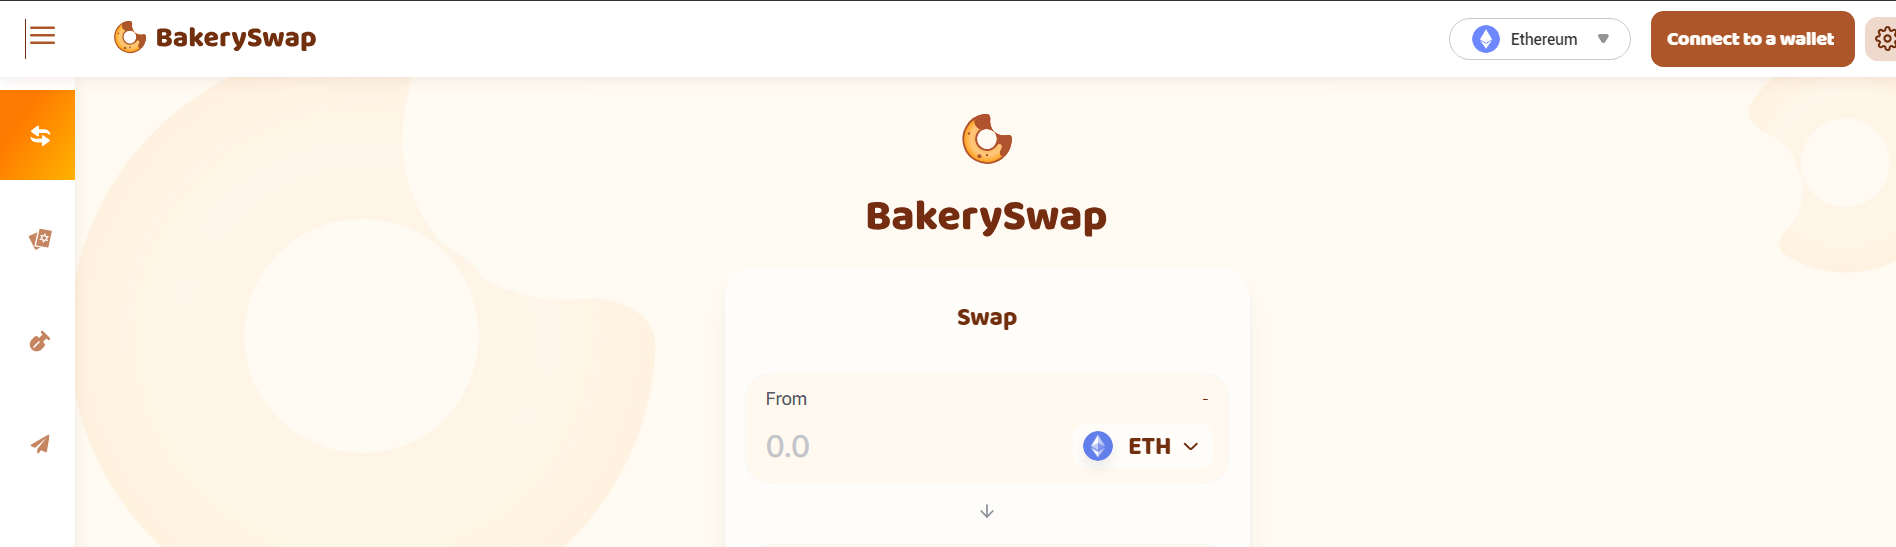 bakeryswap-homepage-